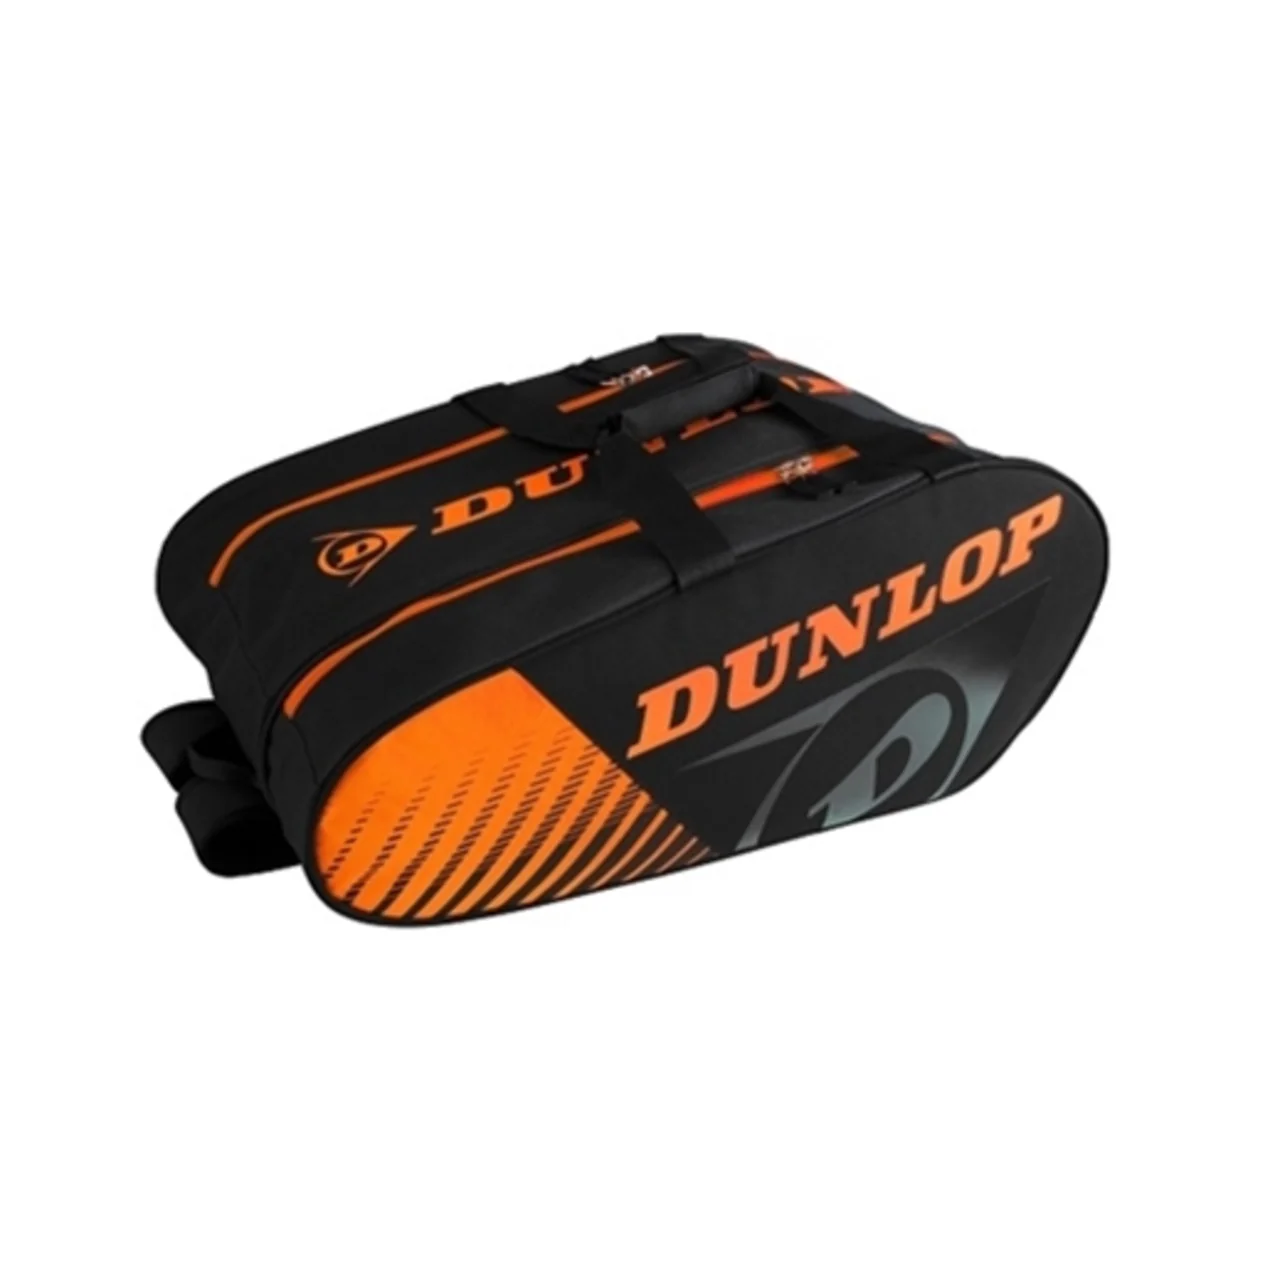 Dunlop Paletro Play Black/Orange 2021